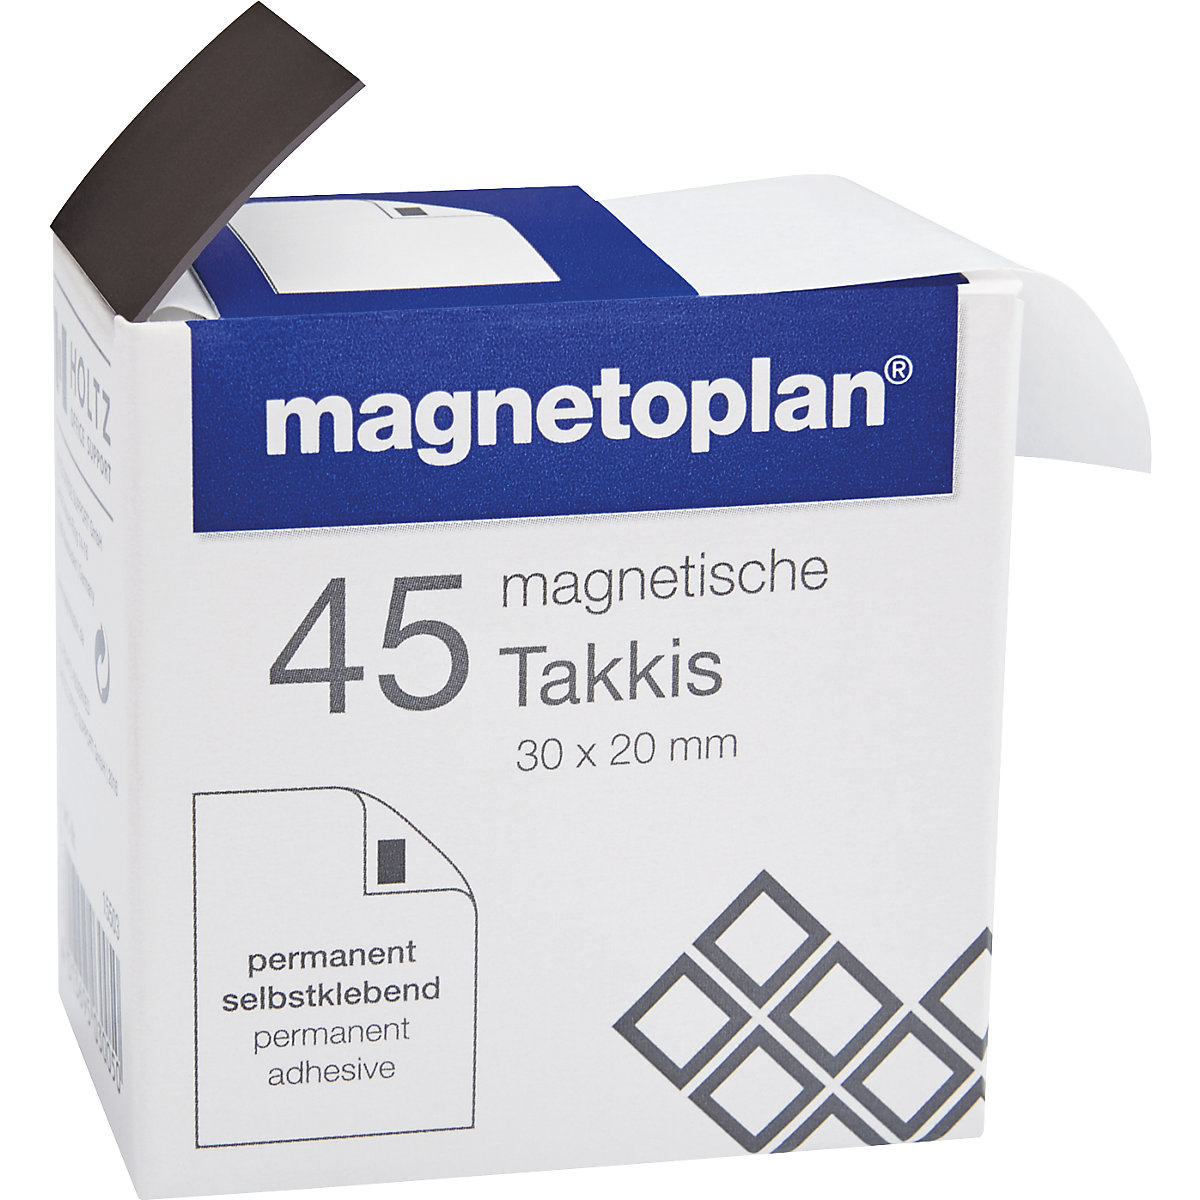 Ljepljivi magneti – magnetoplan